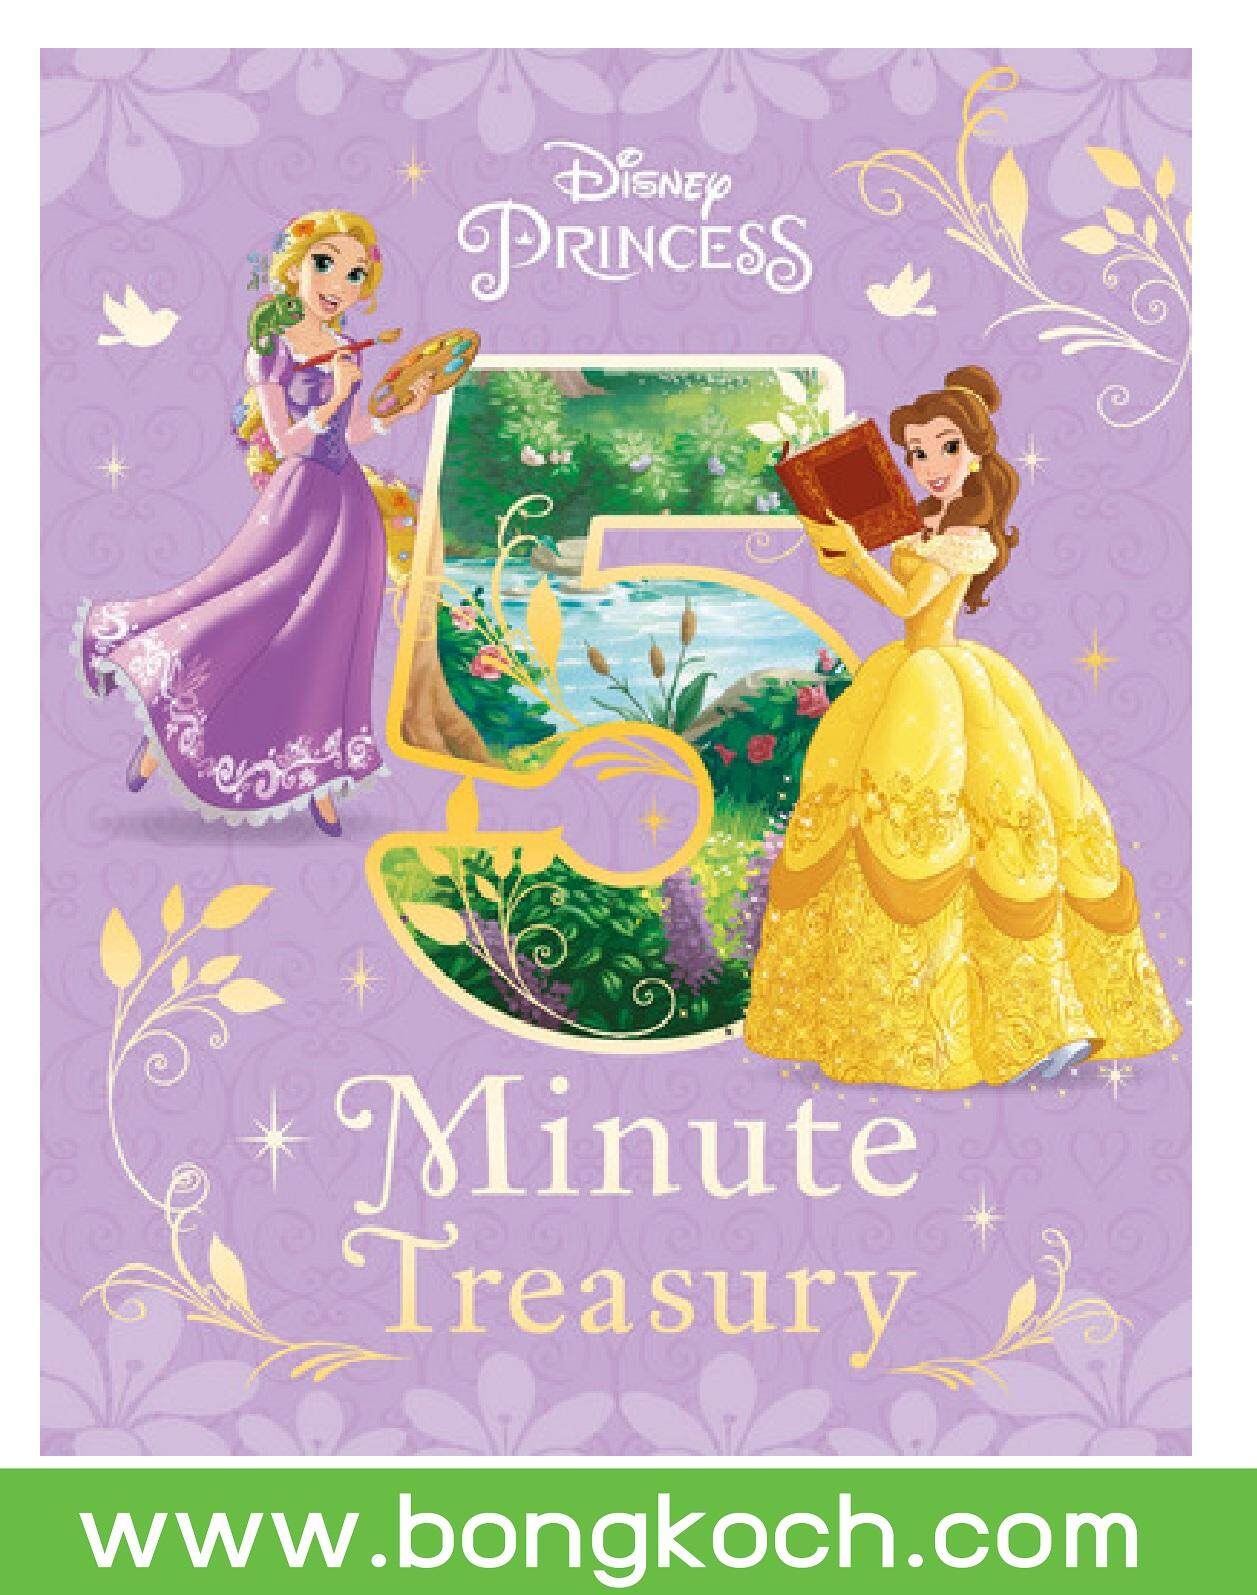 ชื่อหนังสือ Disney Princess 5-Minute Treasury ประเภท นิทาน หนังสือเด็ก บงกช Bongkoch